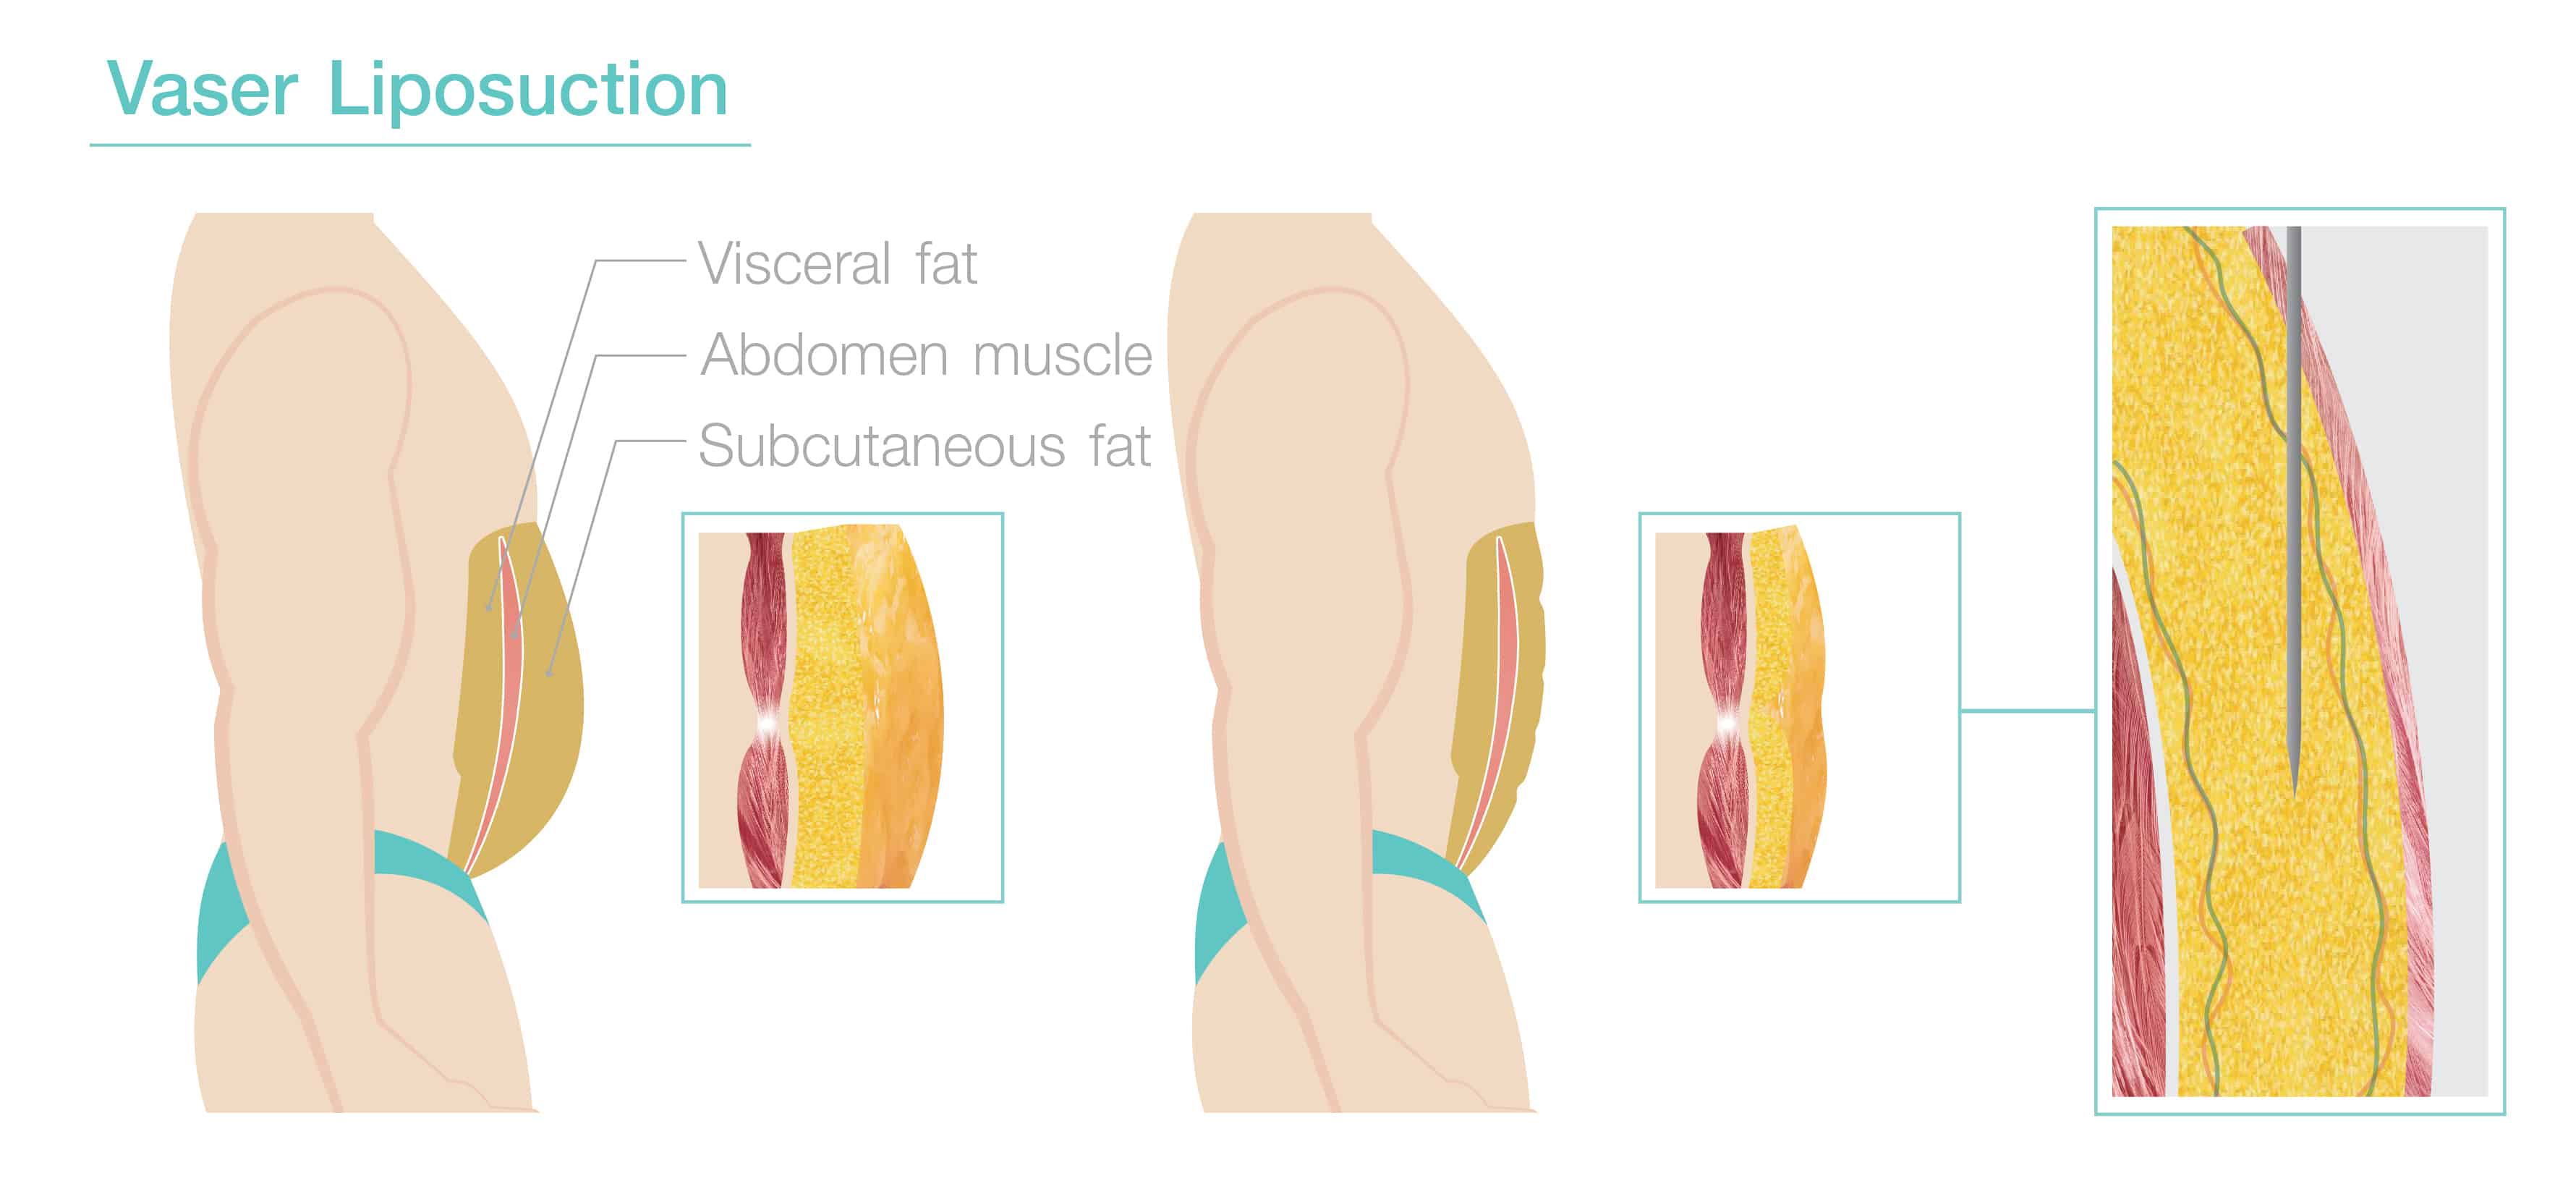 Vaser Liposuction